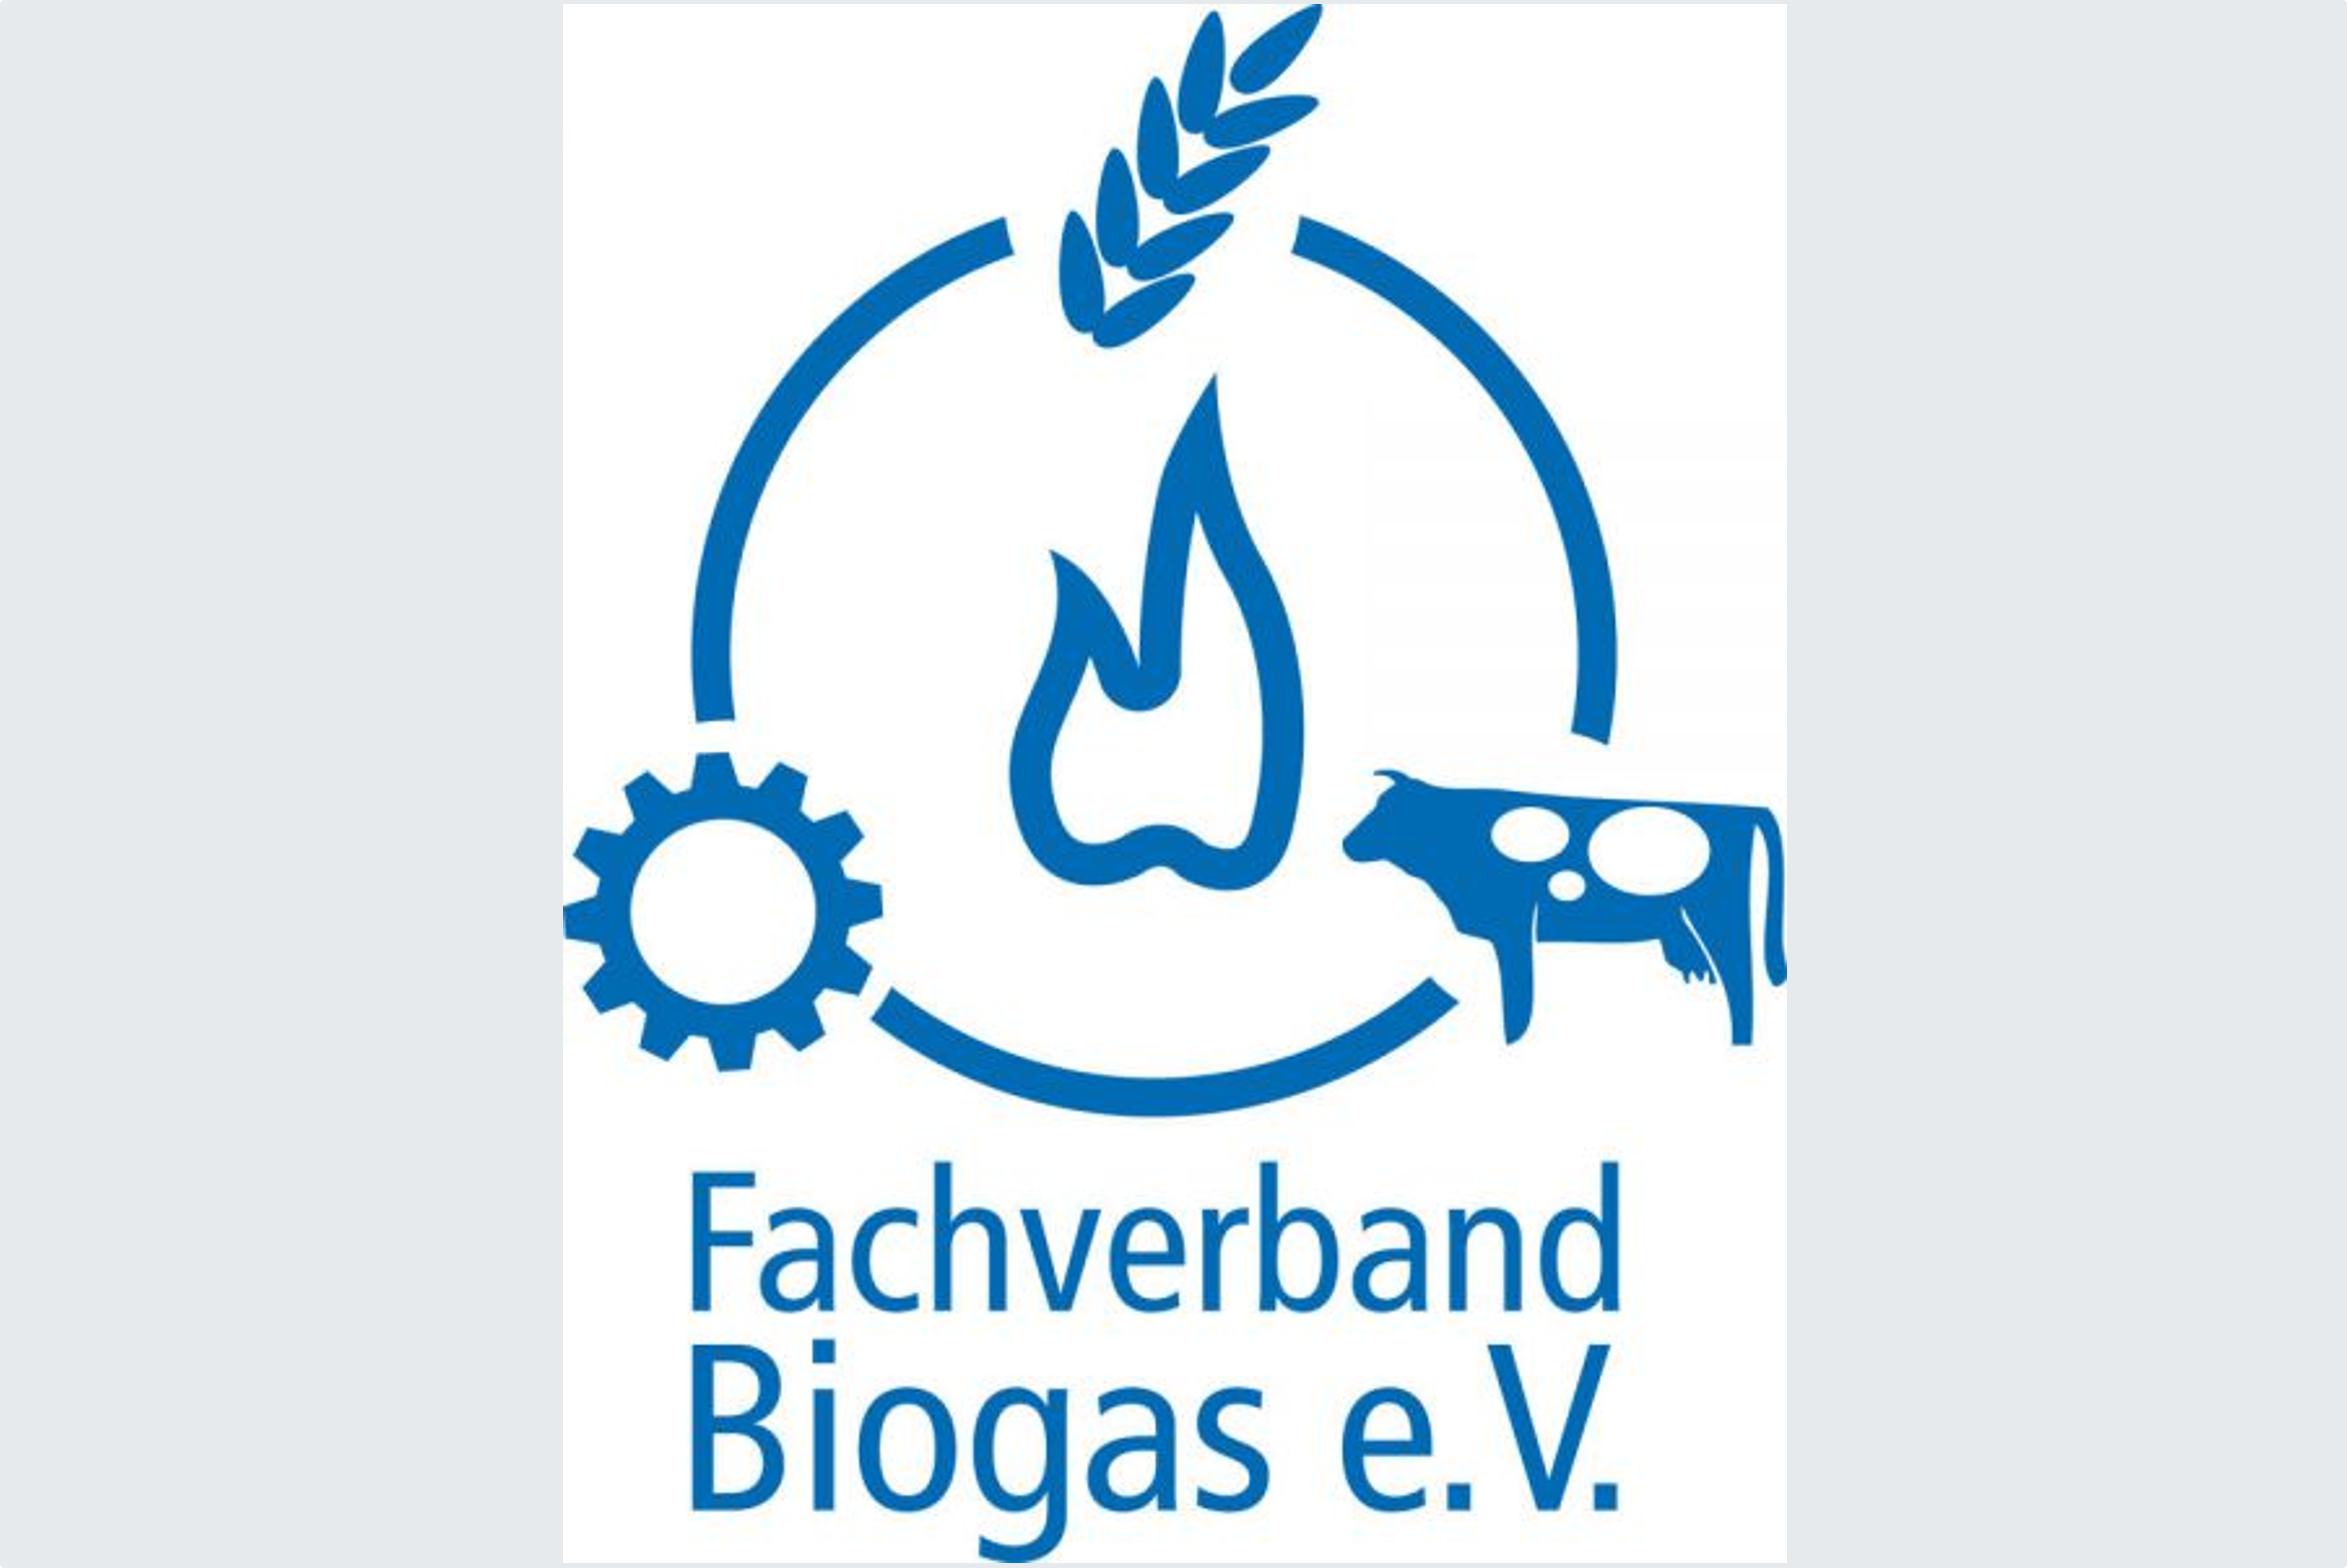 Fachverband Biogas e.V.